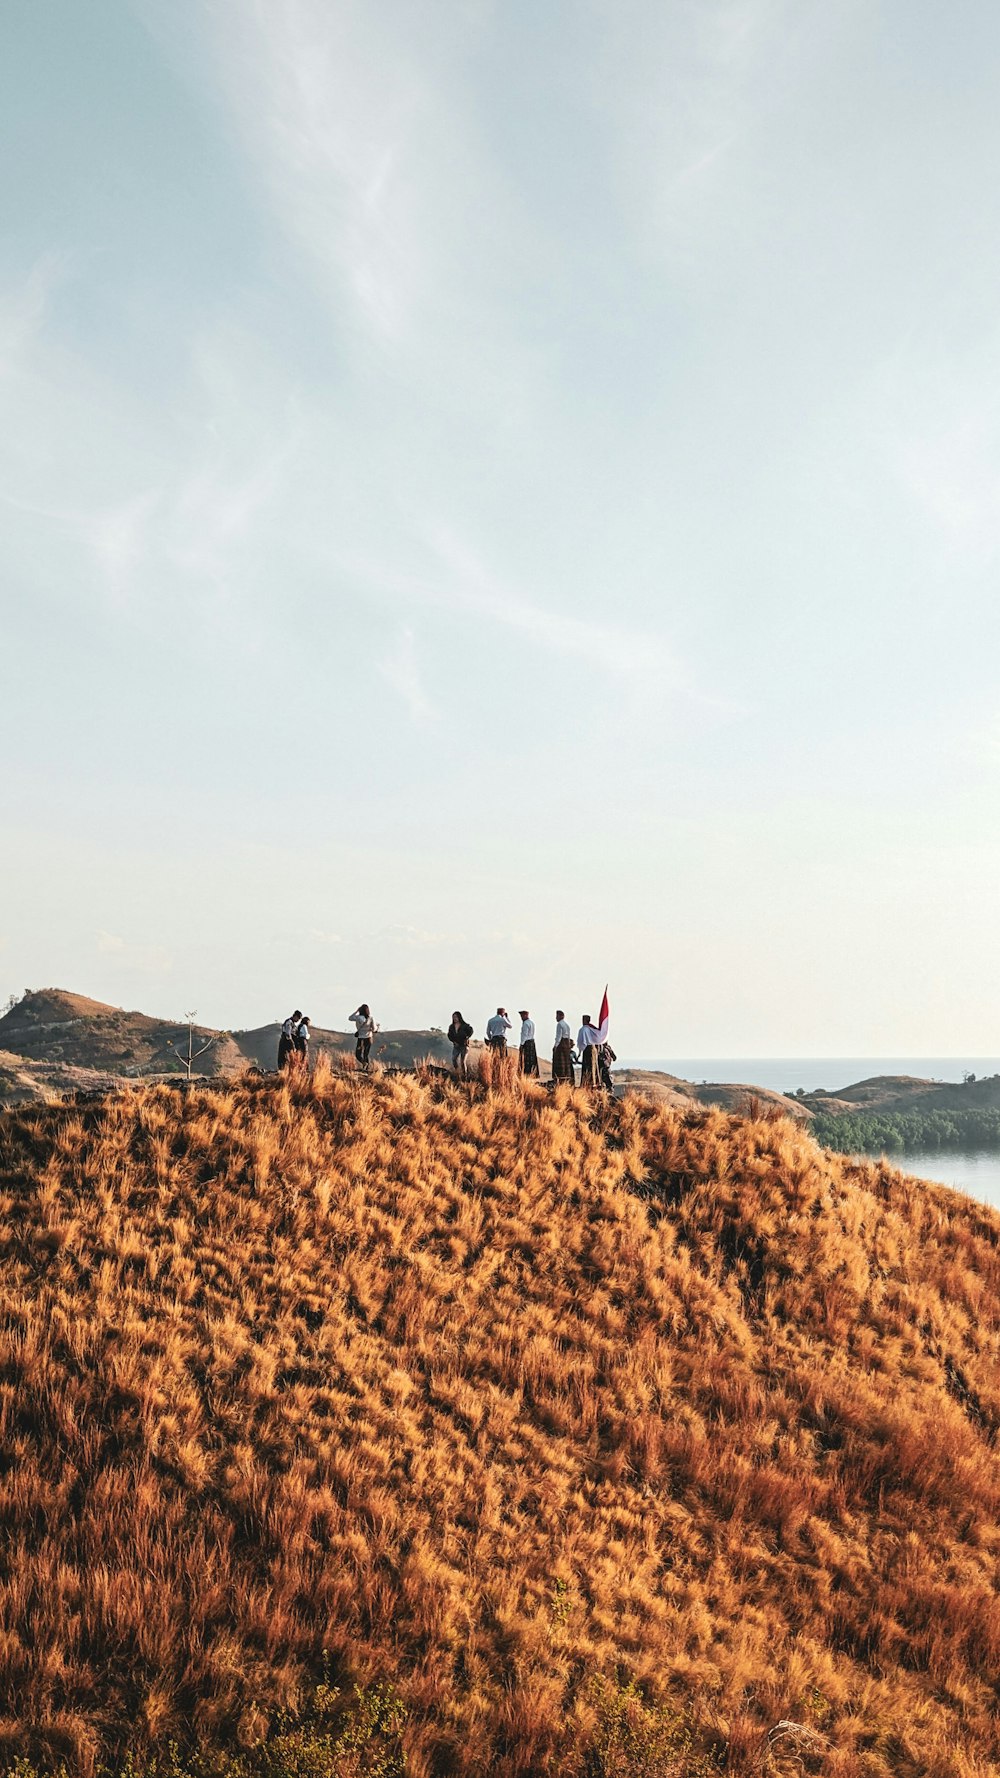 Eine Gruppe von Menschen, die auf einem grasbedeckten Hügel stehen